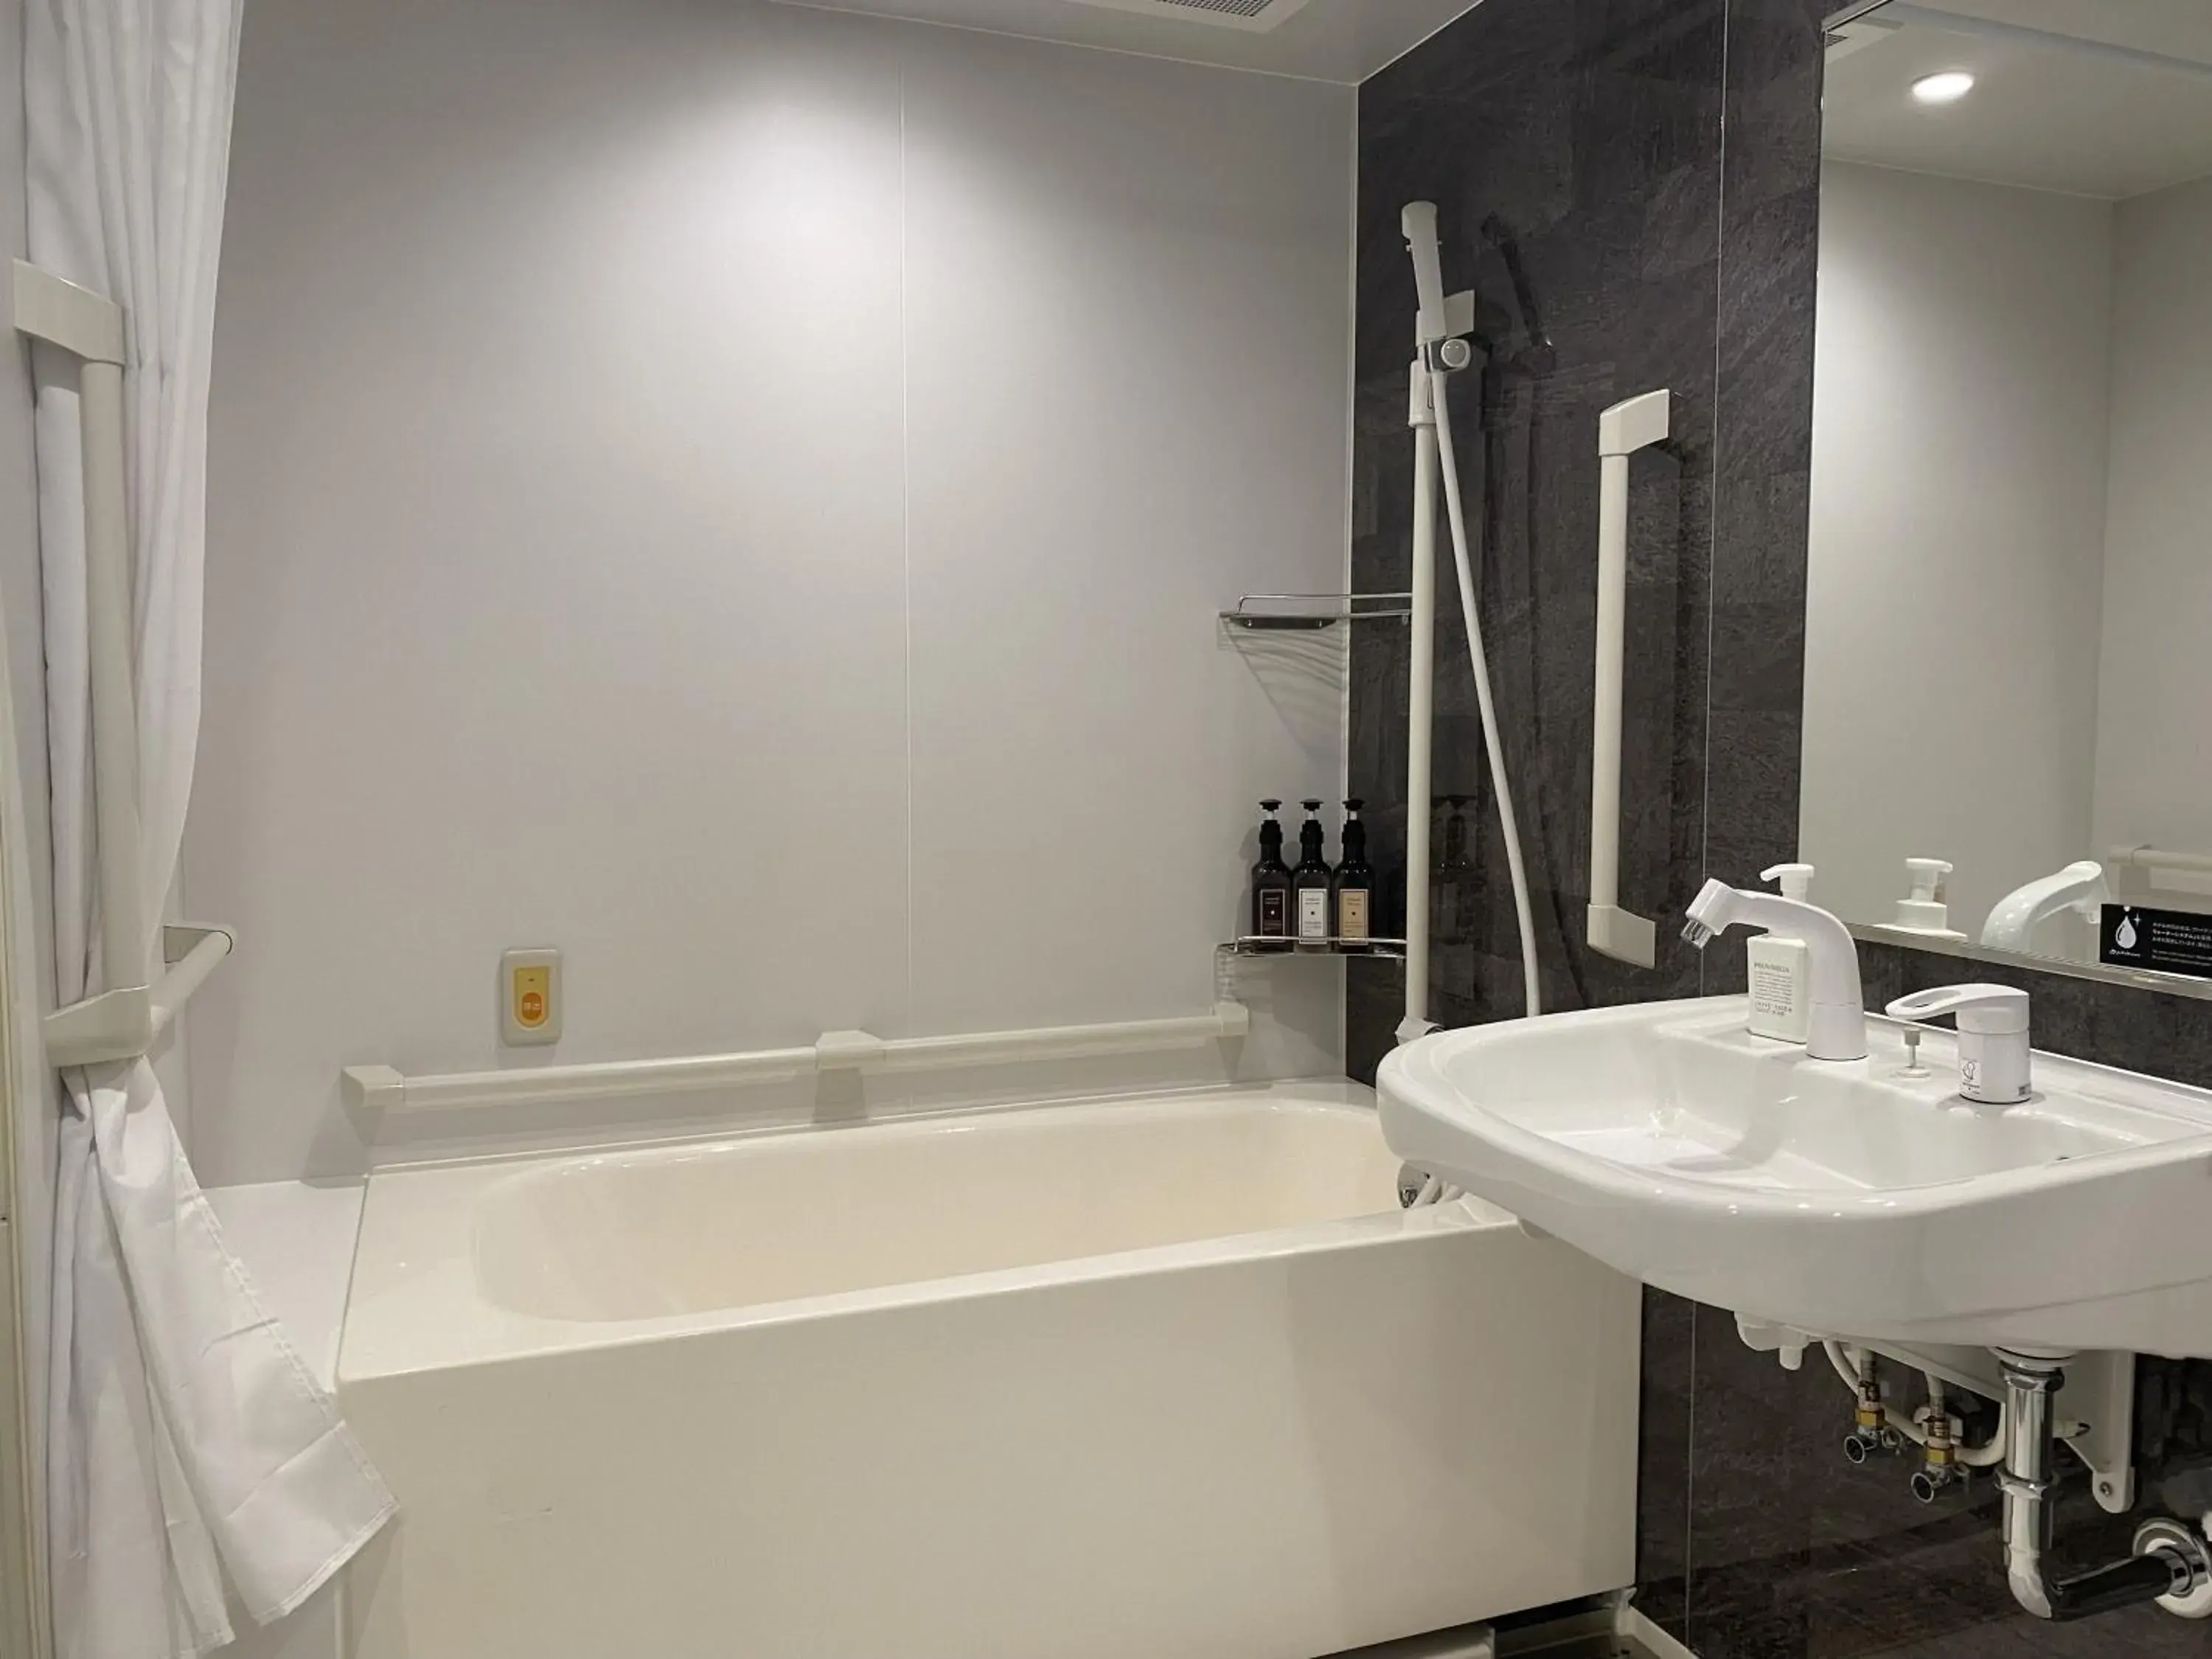 Bathroom in Watermark Hotel Kyoto HIS Hotel Group